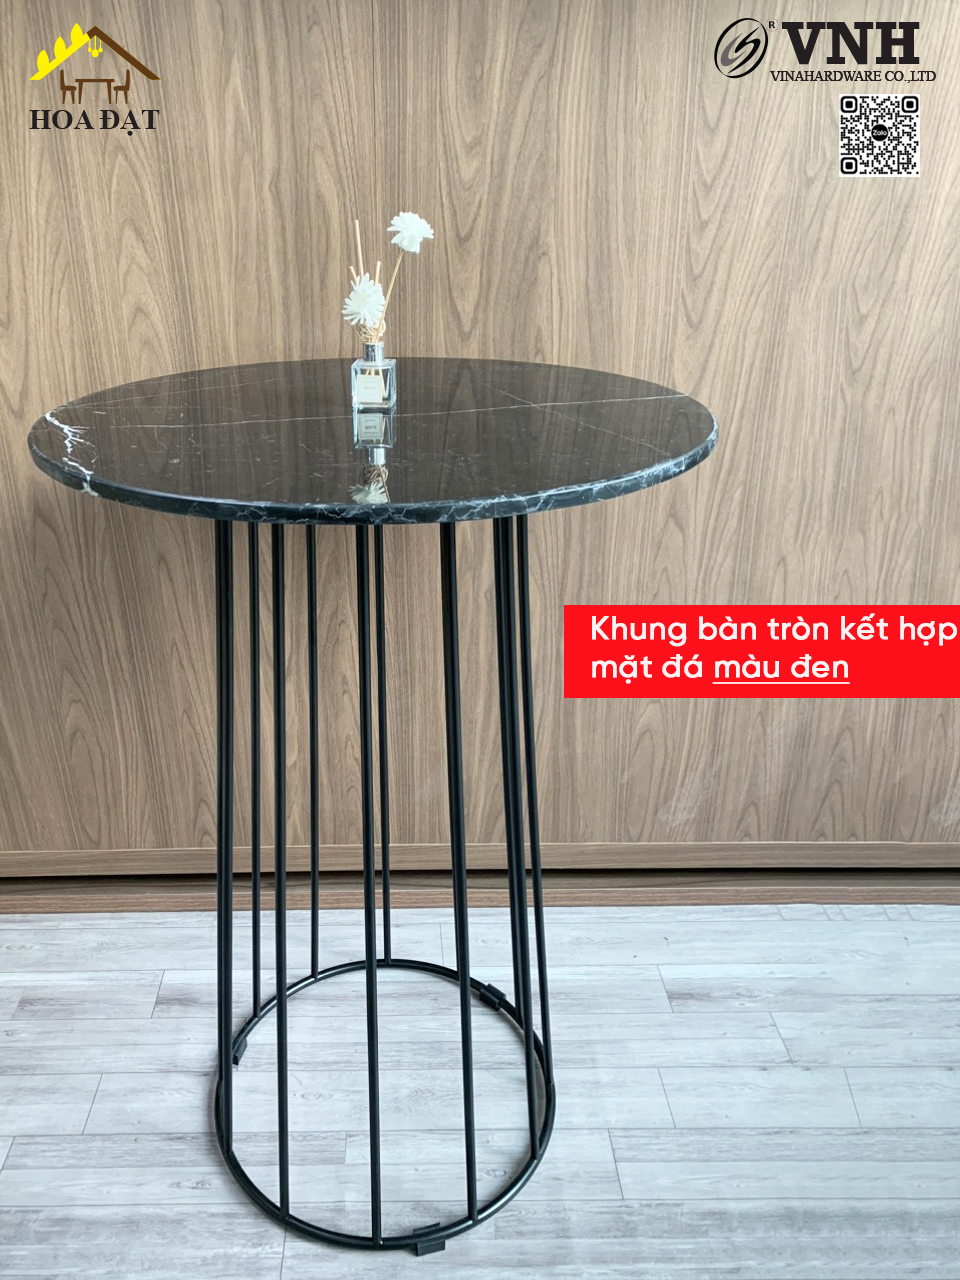 Khung bàn tròn quầy bar, sơn đen VNH - VNH03030